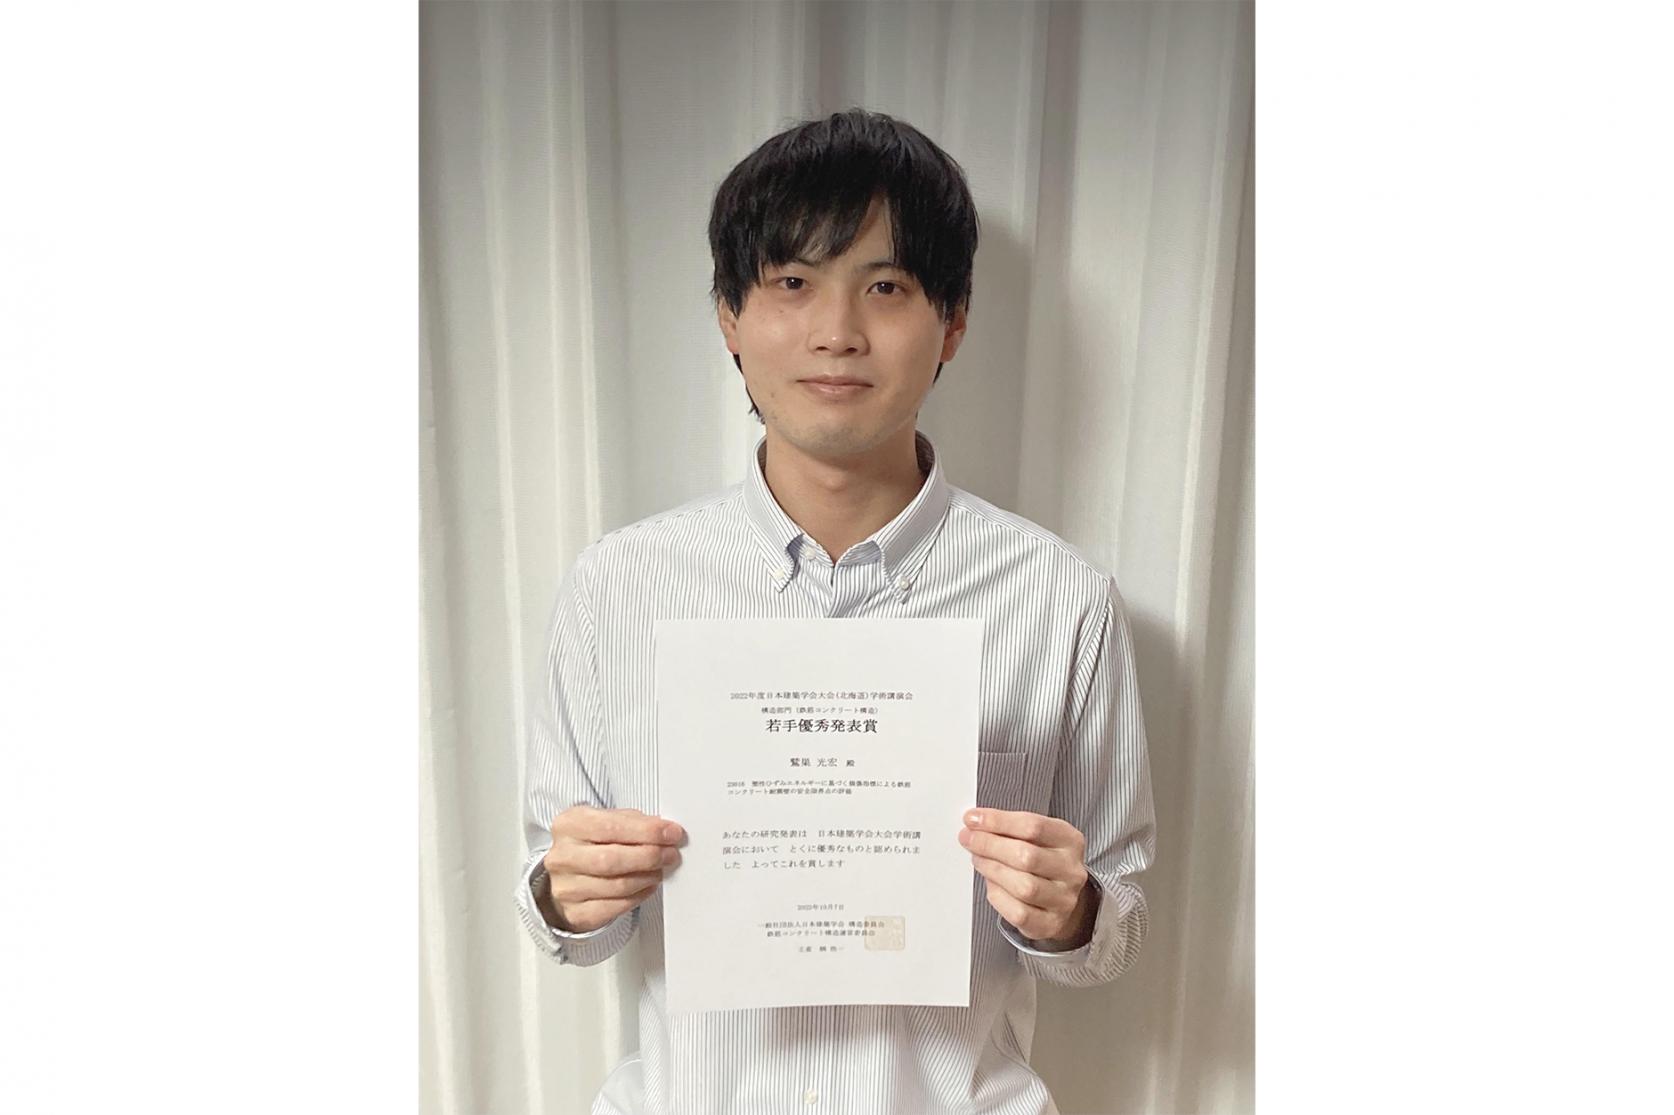 建築学専攻2年の鷲巣光宏さんが、日本建築学会大会学術講演会において、若手優秀発表賞を受賞しました。